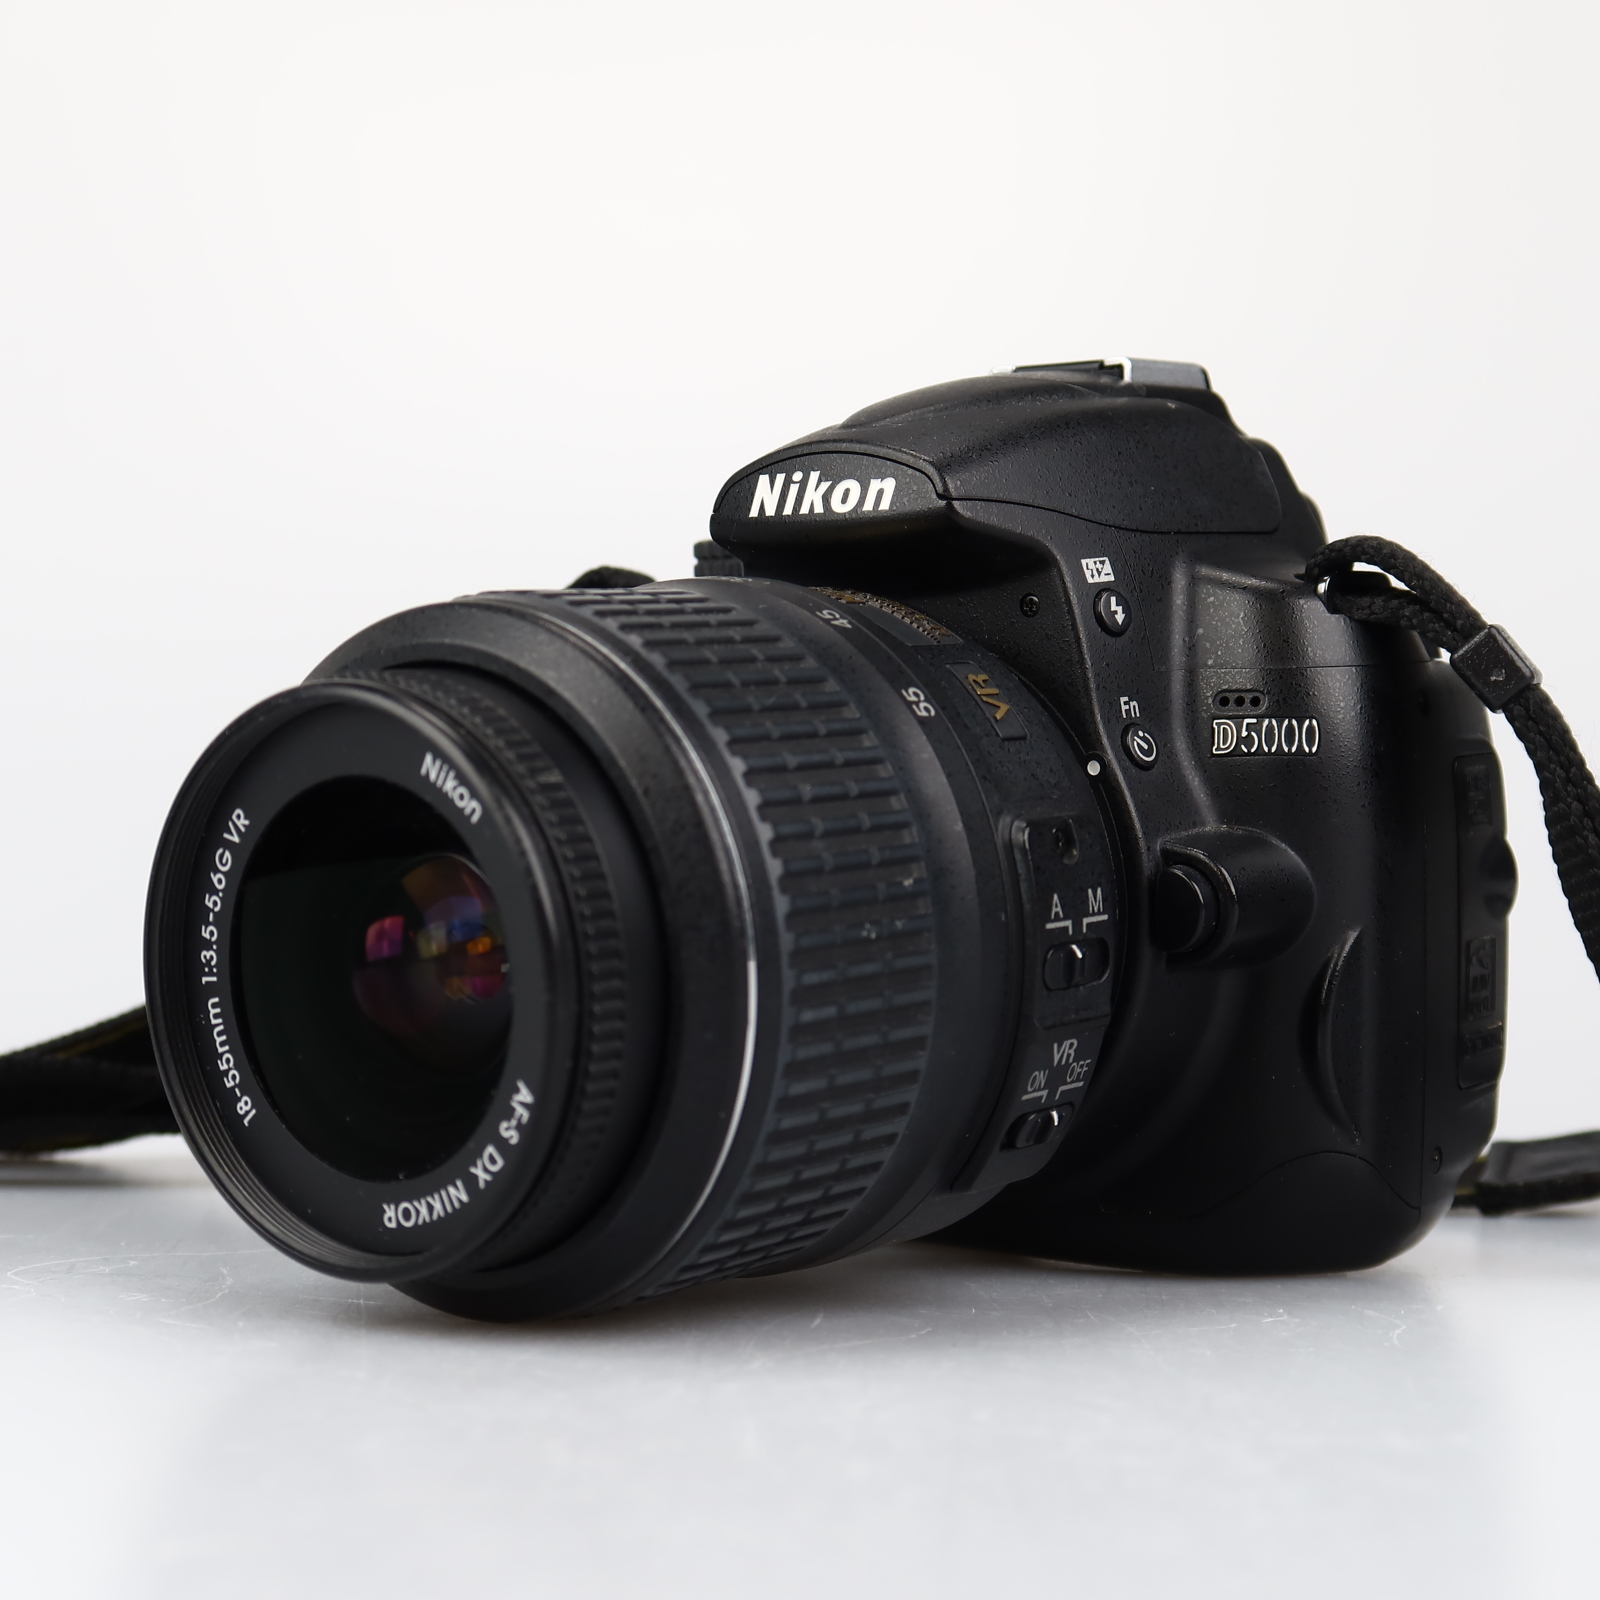 (Myyty) Nikon D5000 + 18-55mm (SC:21600) (käytetty)